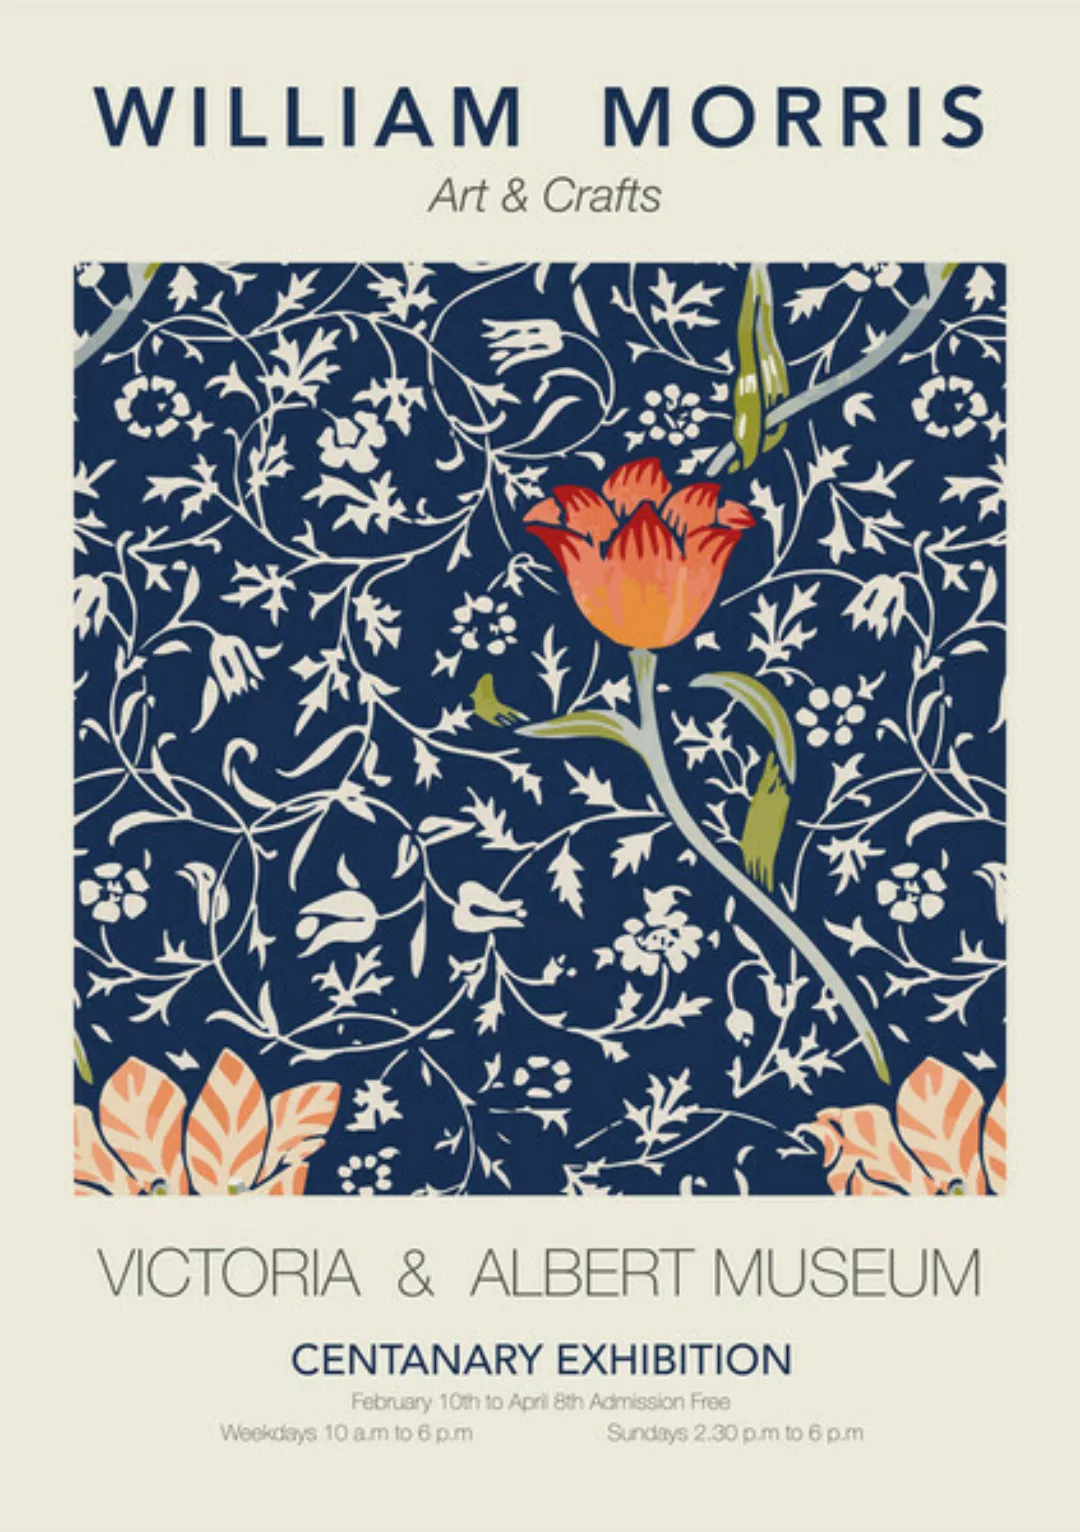 Poster / Leinwandbild - William Morris - Bau-rotes Blumenmuster günstig online kaufen